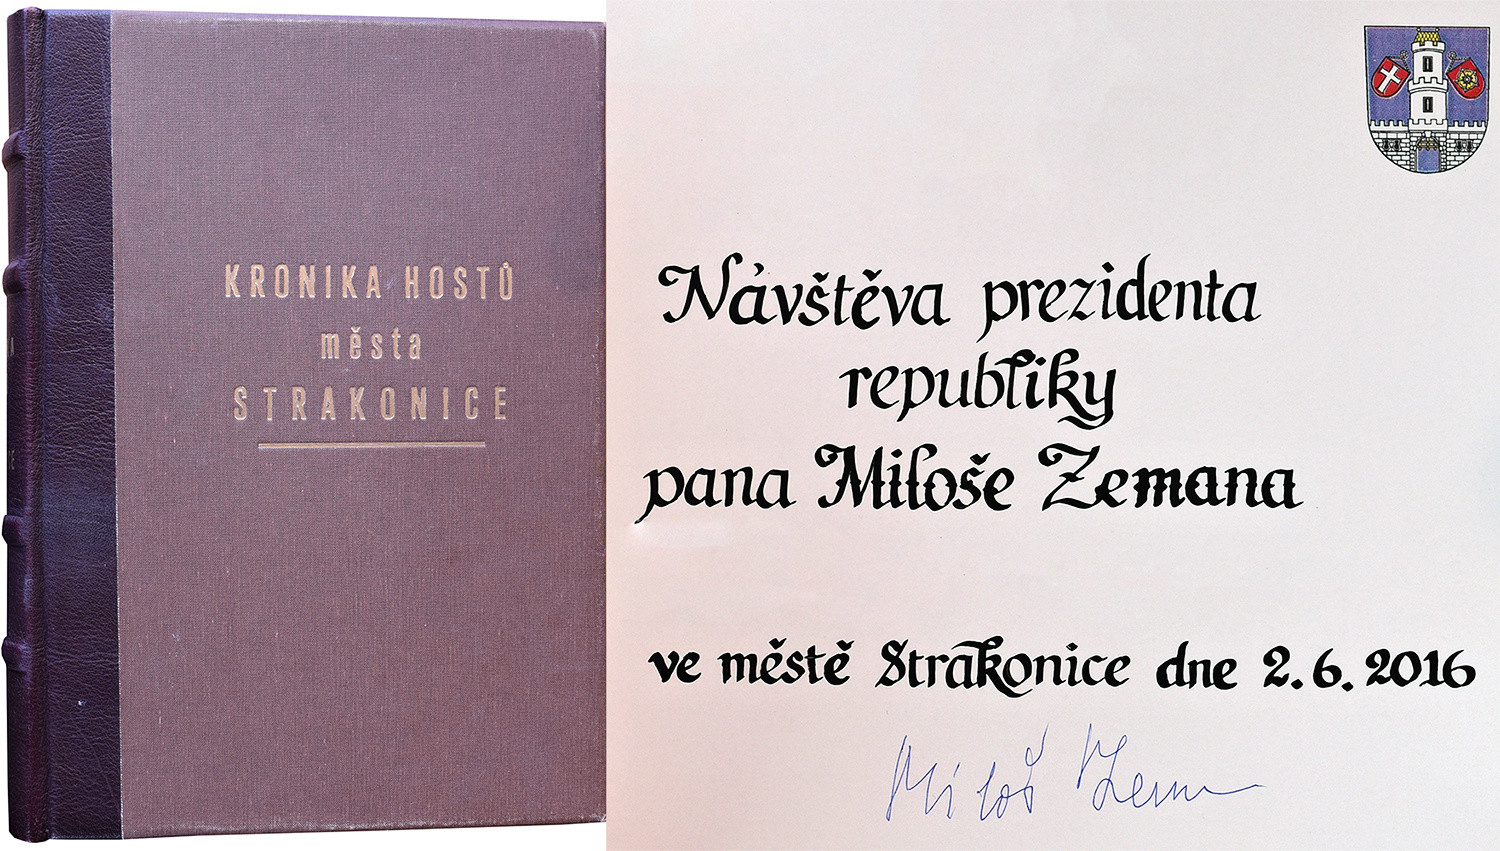 Prezident Miloš Zeman ve Strakonicích – zápis prezidenta v Knize hostů města Strakonice